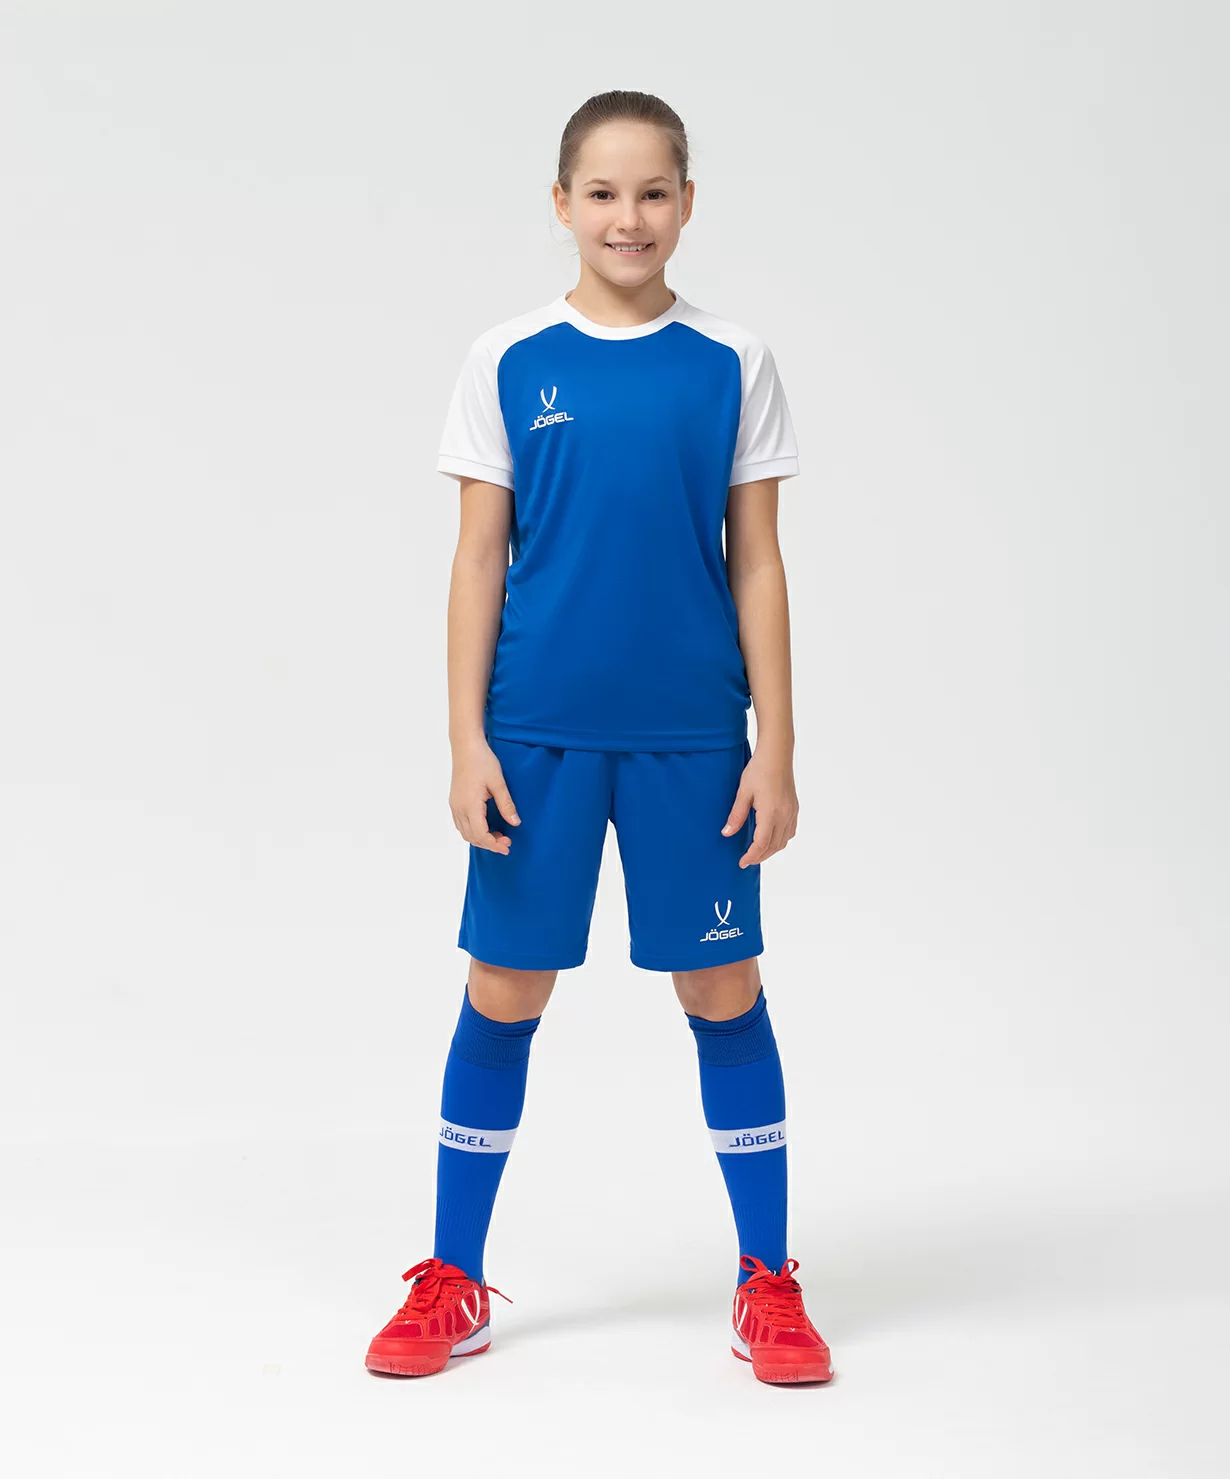 Реальное фото Футболка игровая CAMP Reglan Jersey, синий/белый, детский Jögel от магазина Спортев